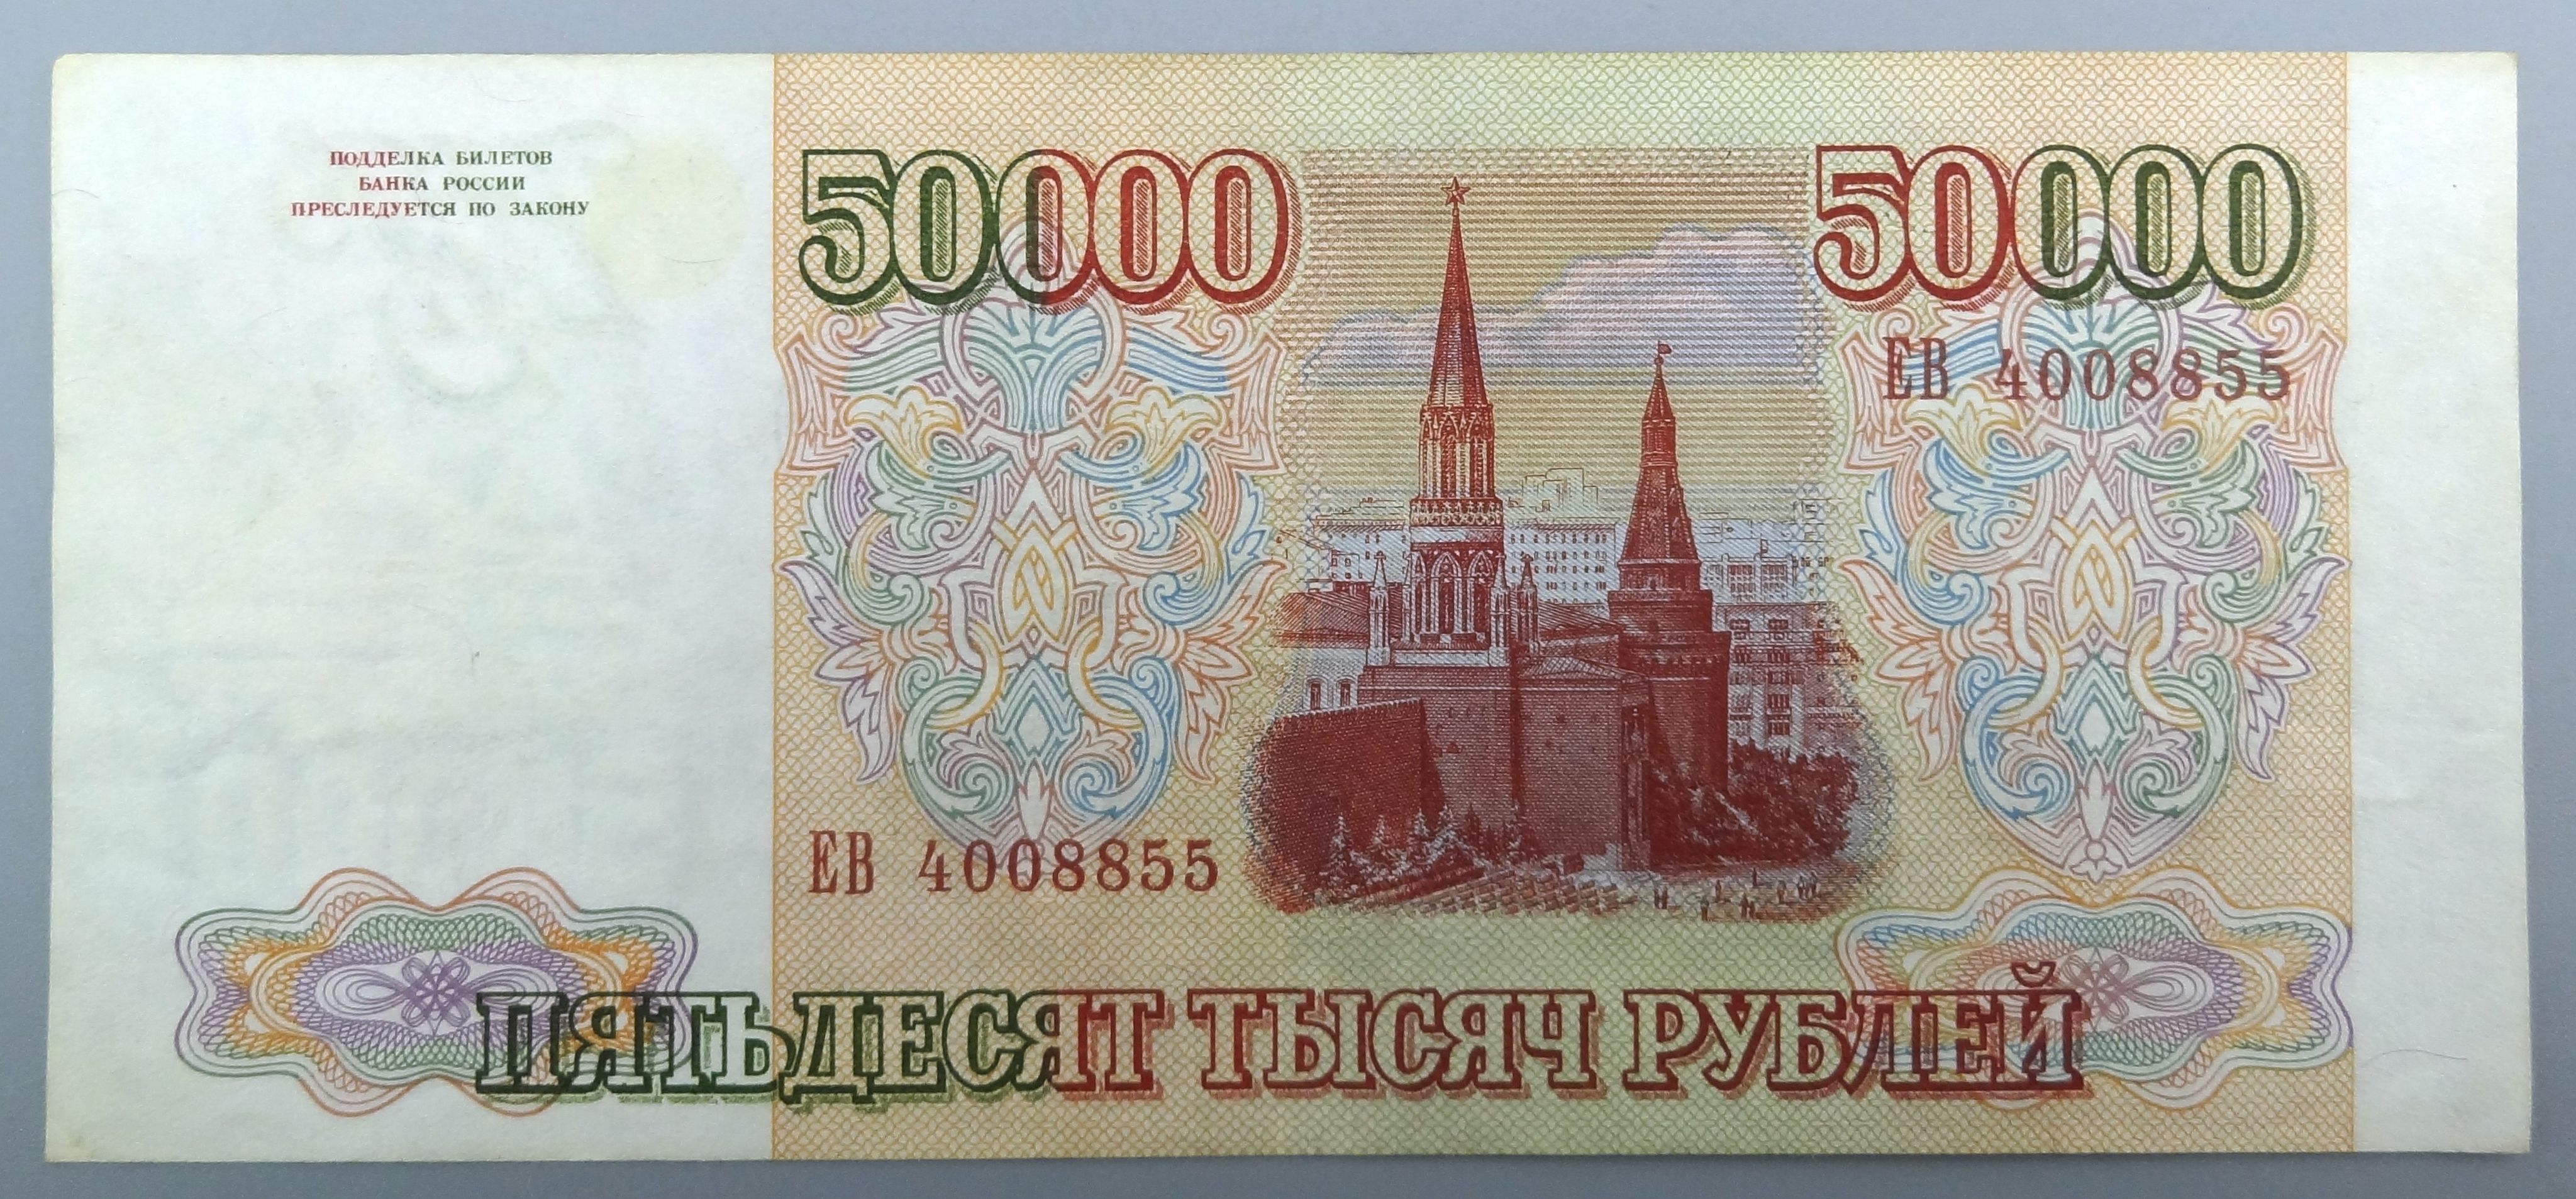 Купюра 50000 рублей 1993. Купюра 50000 рублей. Банкноты 50000 рублей. 50000 Рублей купераээ.